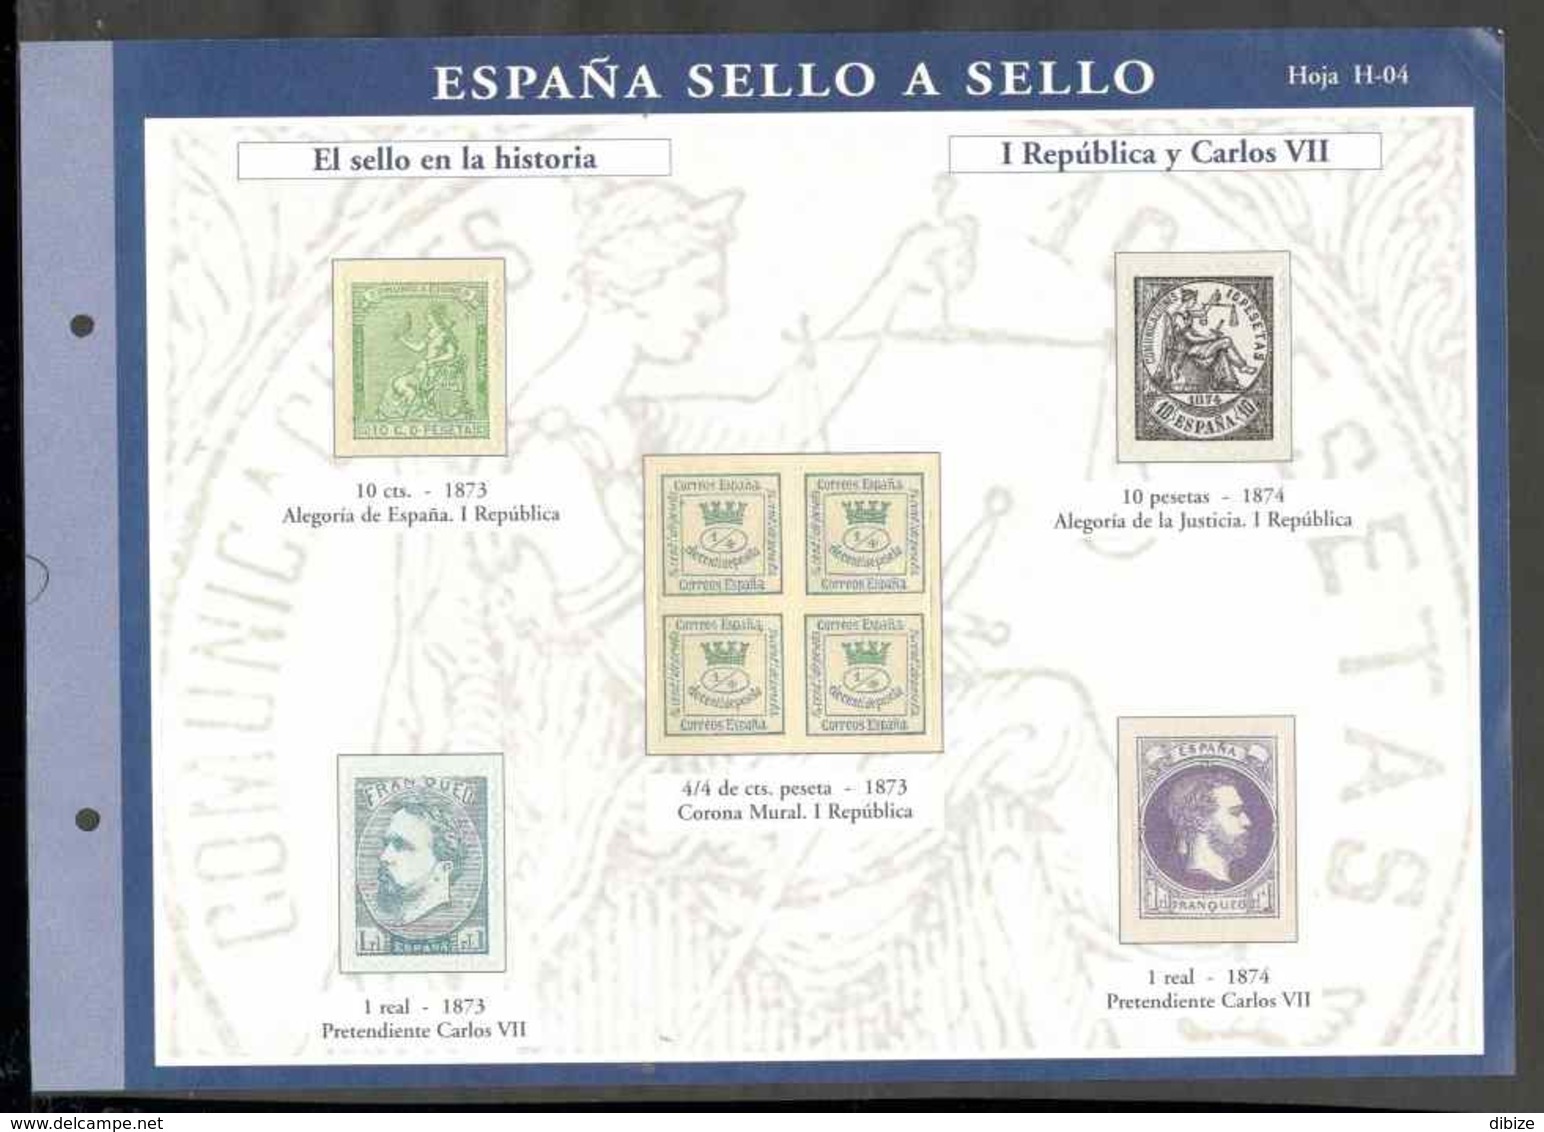 España sello a sello. Colección limitada  numerada. 18 entregas El País. N° 3 a 6. 8 a 14. 33 a 35. 48 a 51. Reproducion